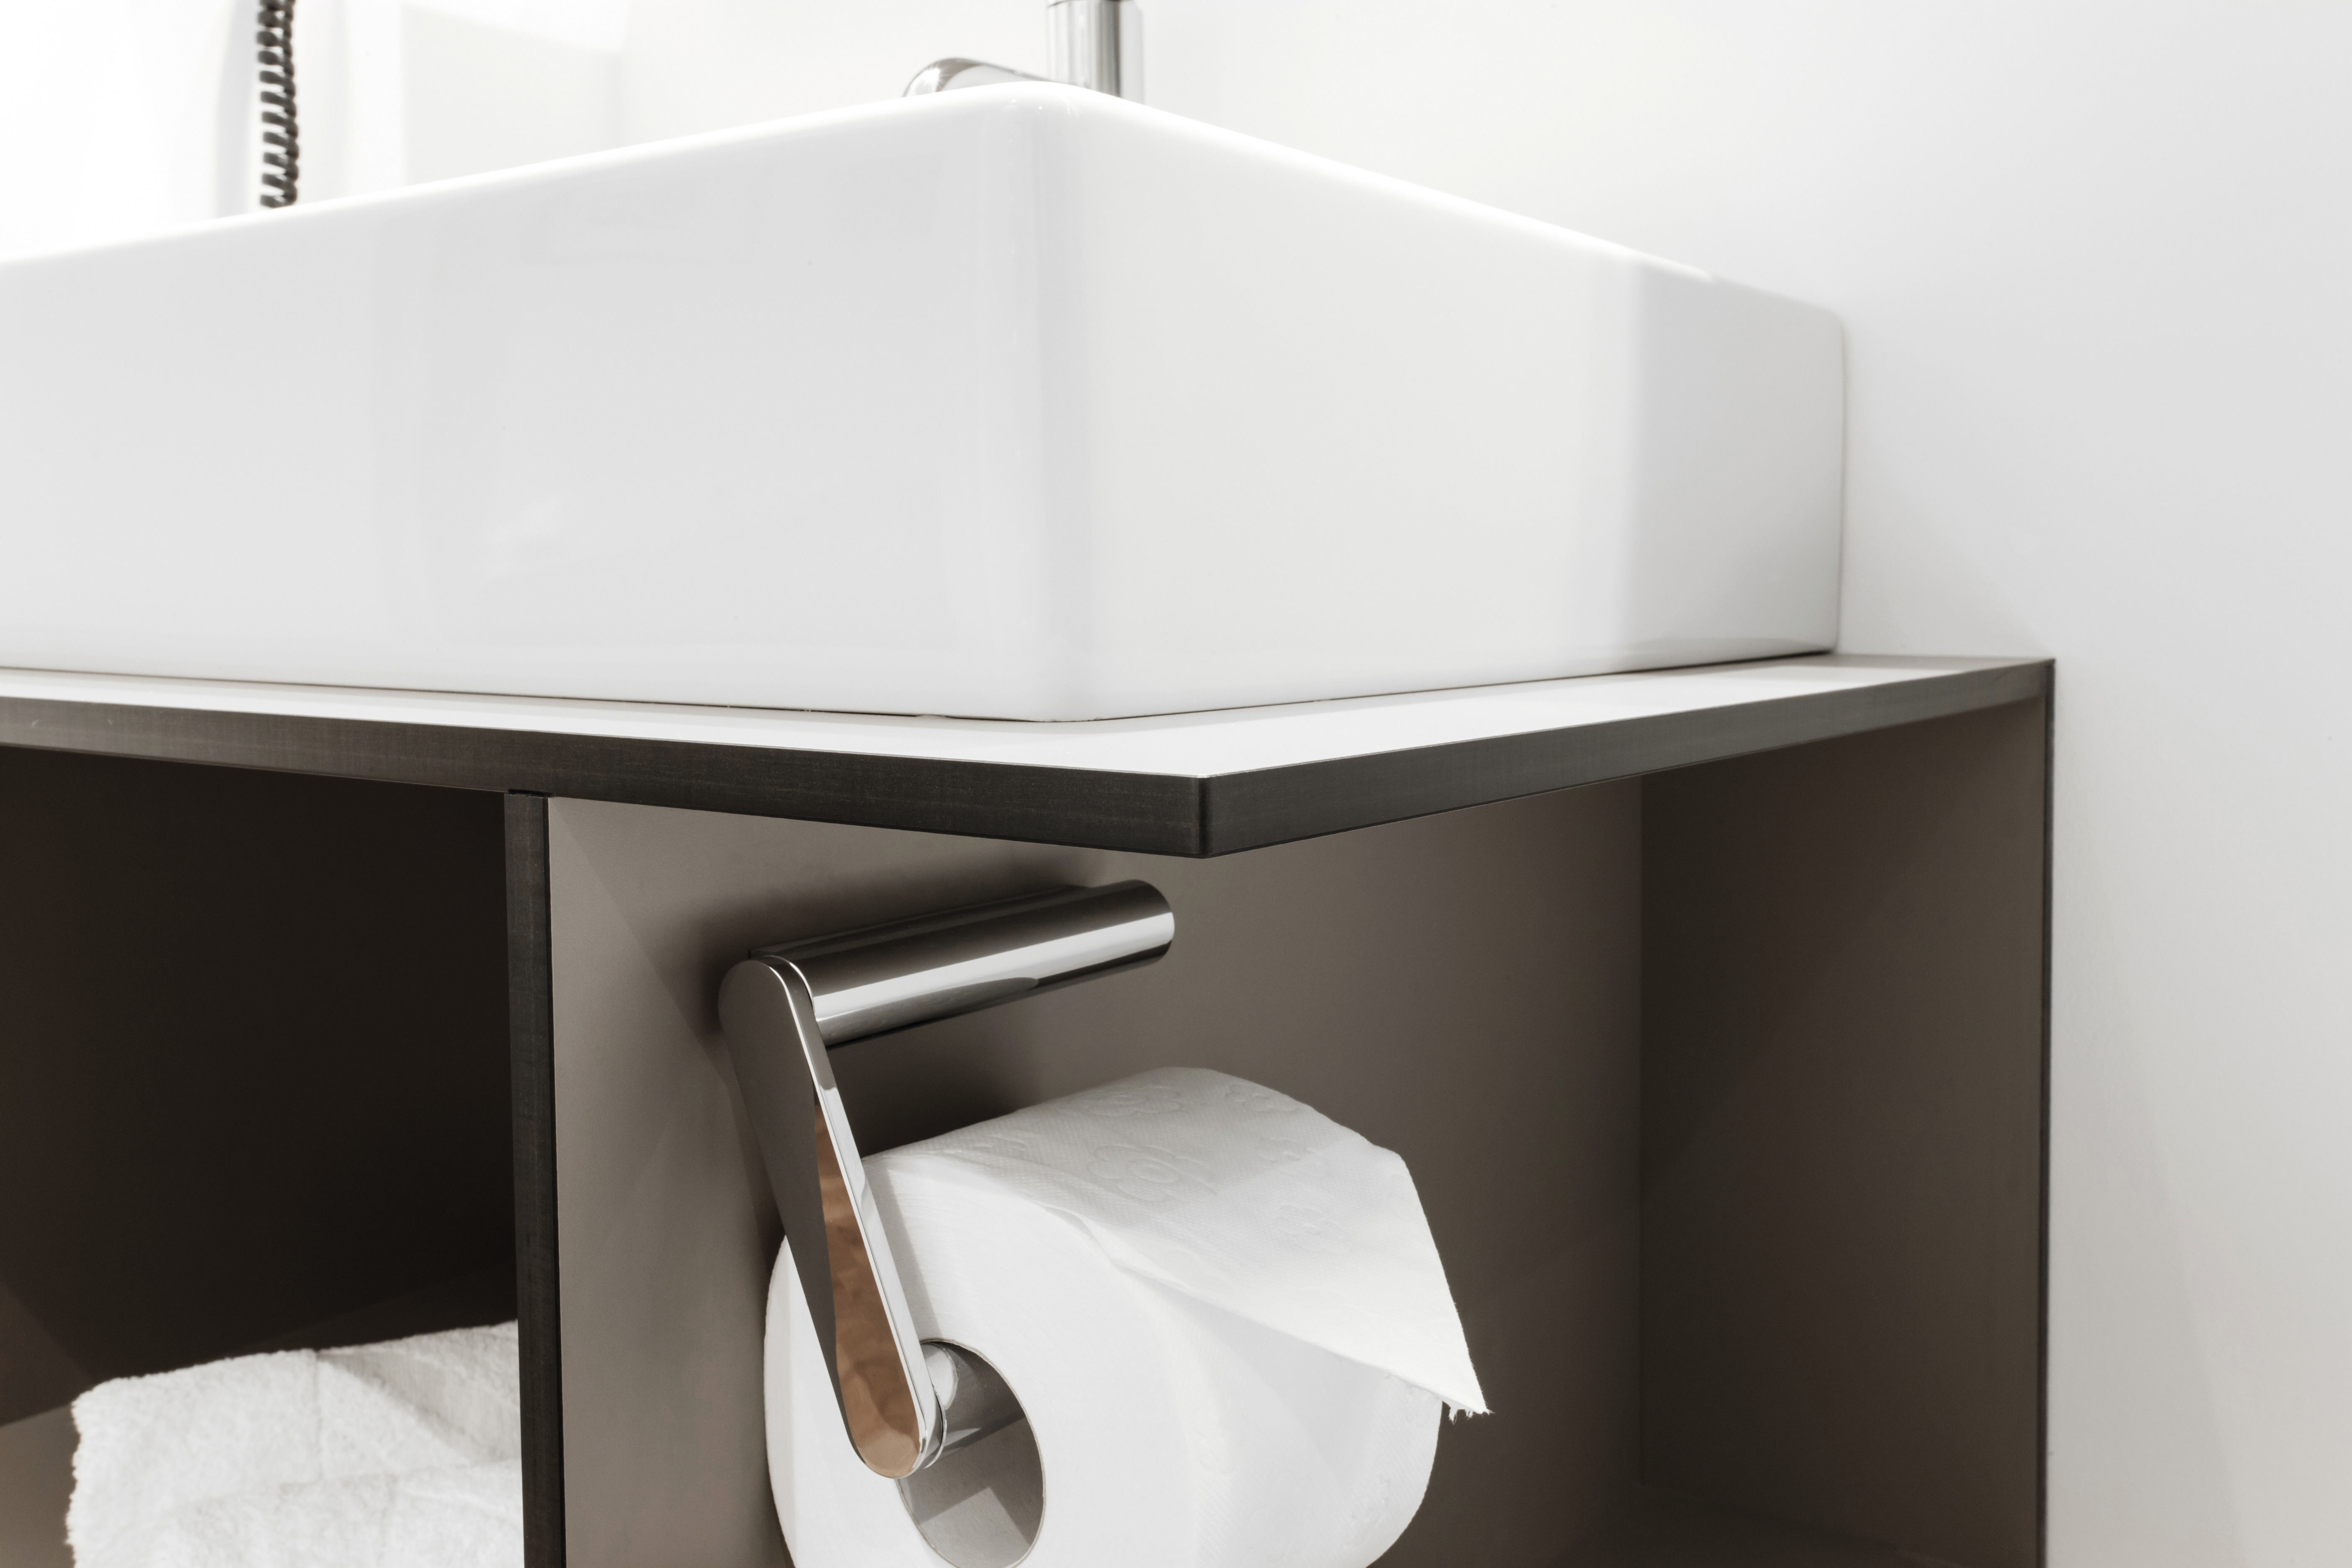 Laminaty kompaktowe firmy EGGER nadają się w szczególności do budowy ścian kabin prysznicowych i umywalek